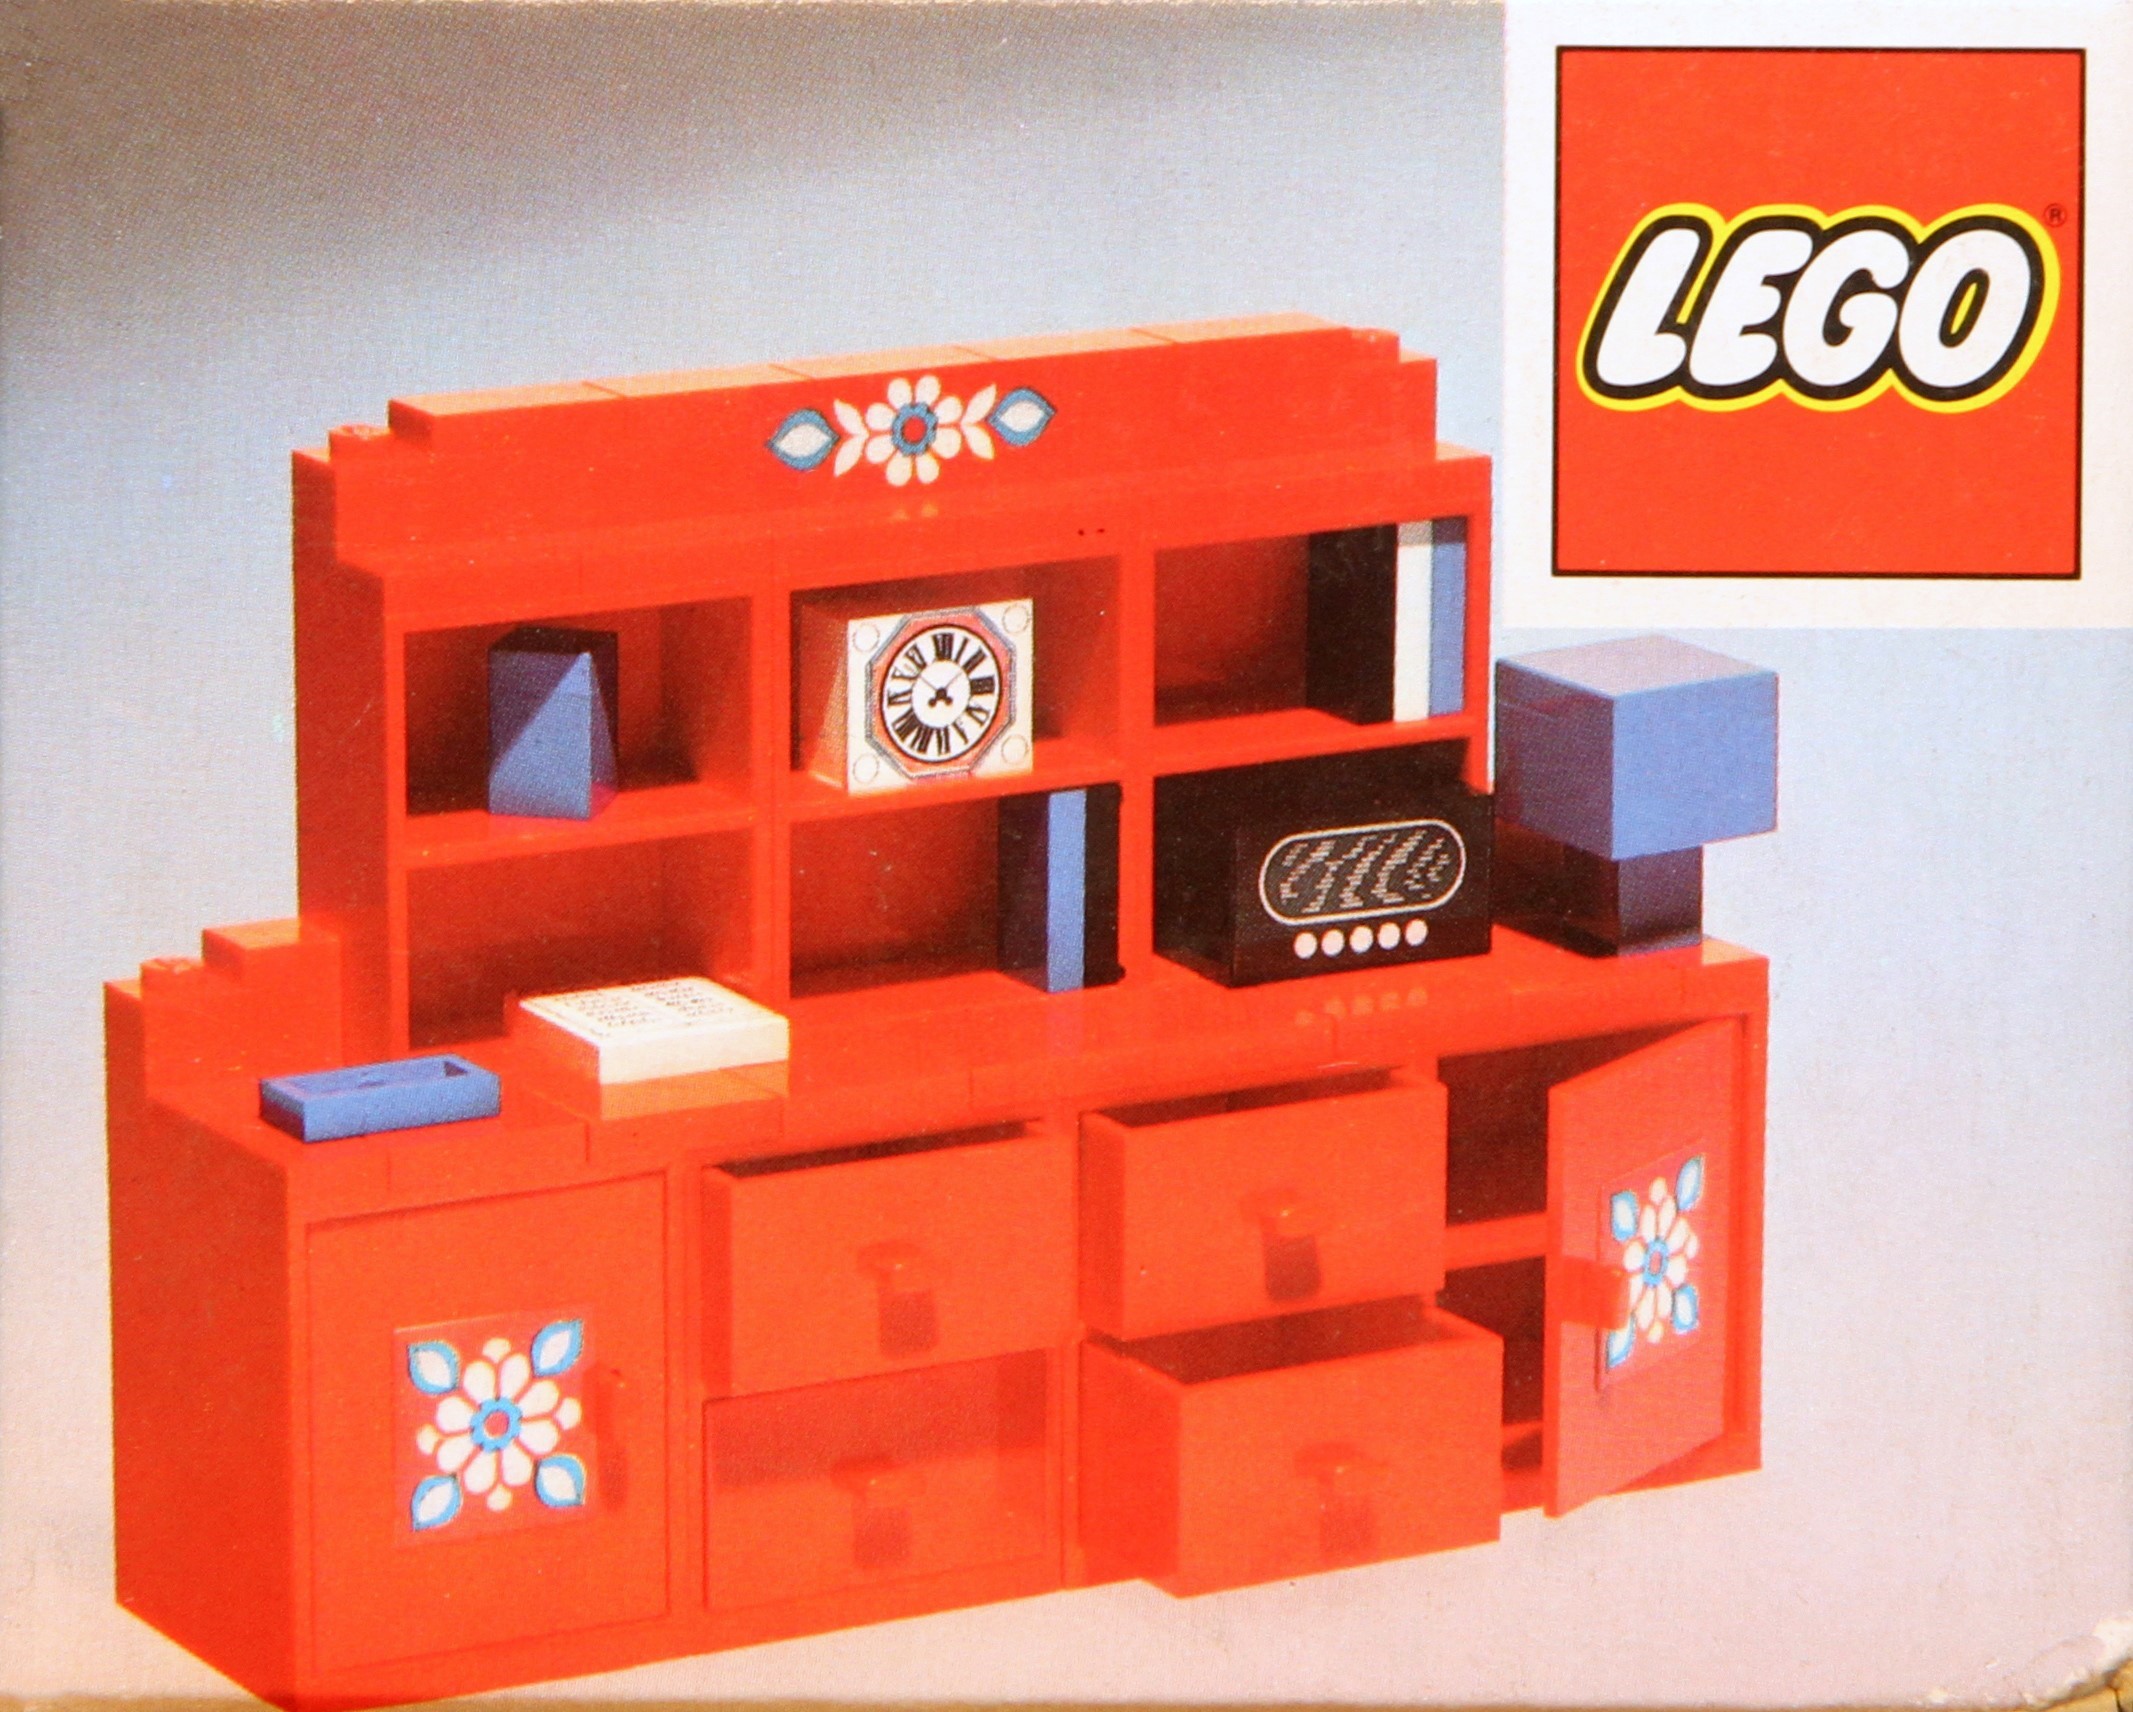 LEGO 1974